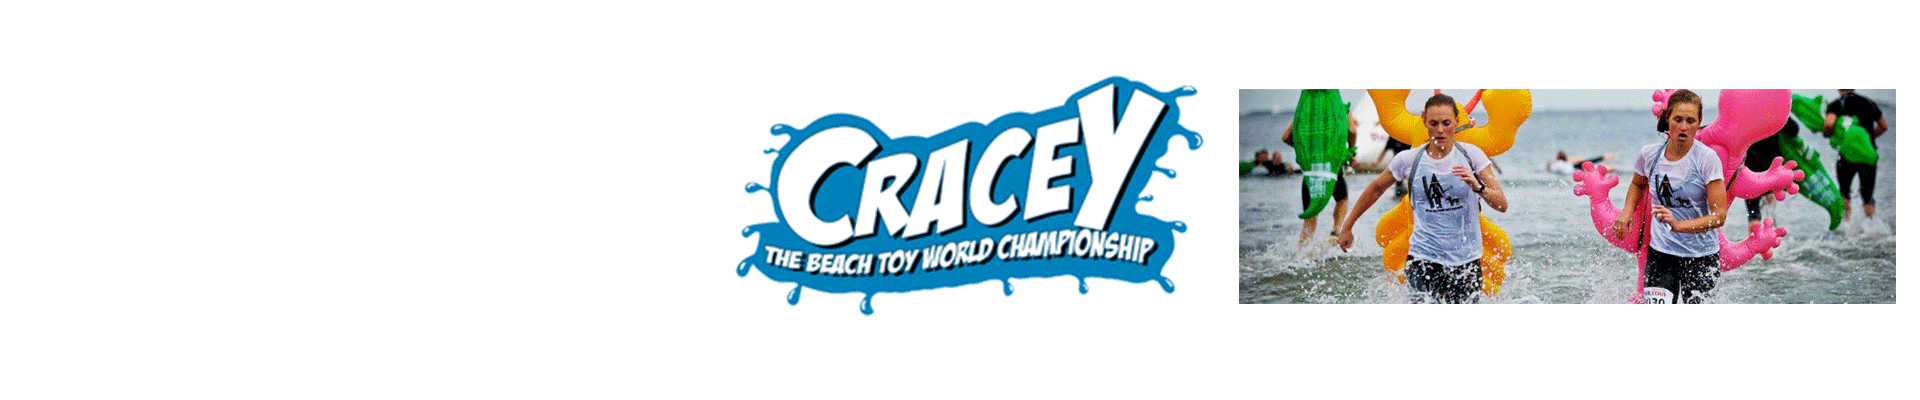 CraceY 2017